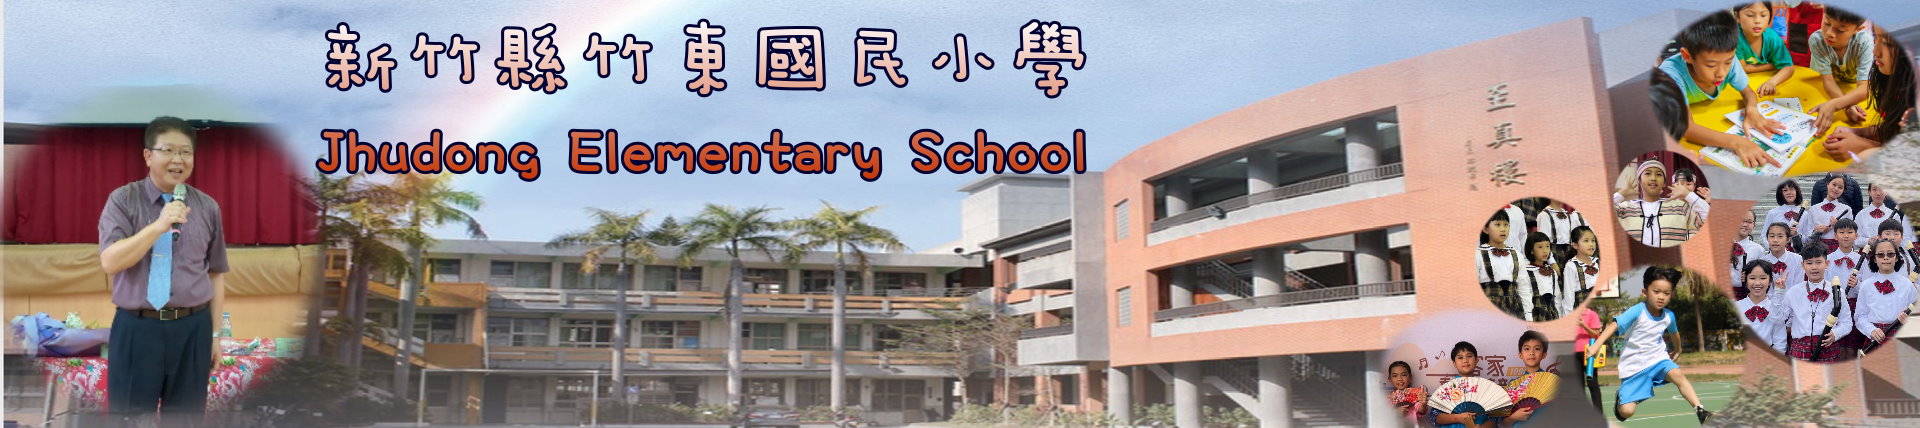 新竹縣竹東國民小學 Jhudong Elementary School